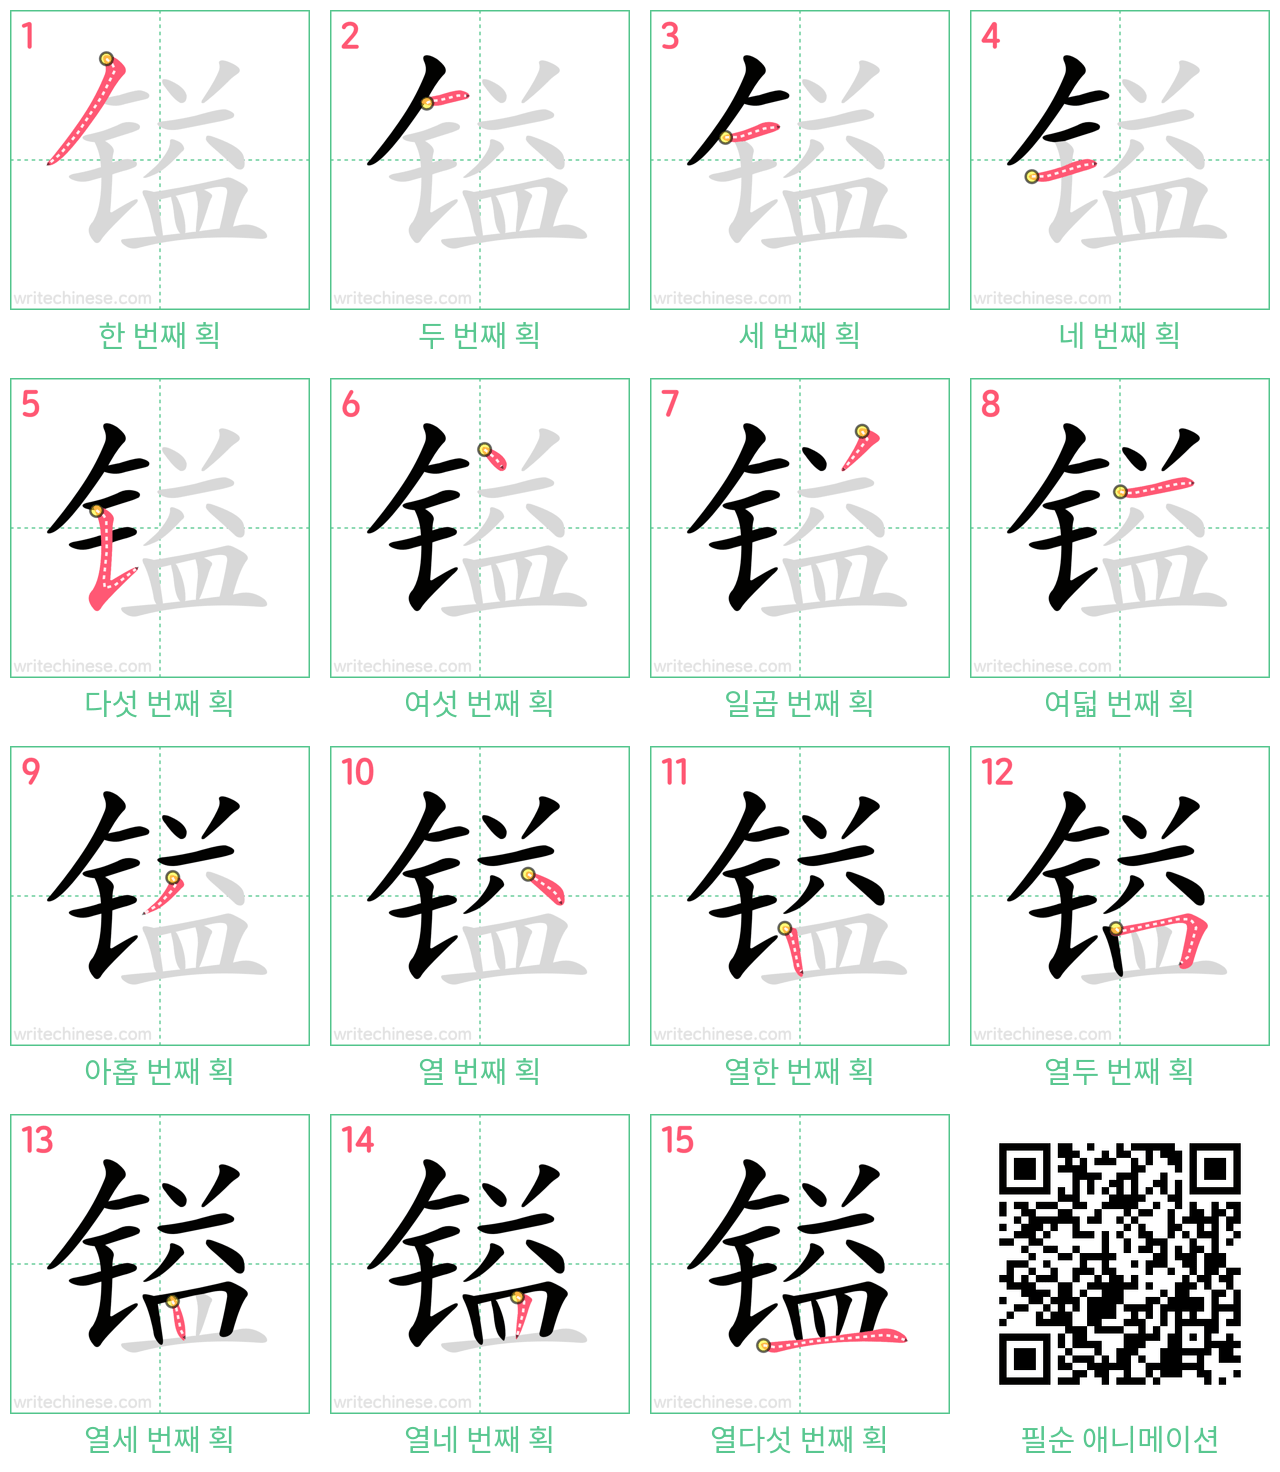 镒 step-by-step stroke order diagrams